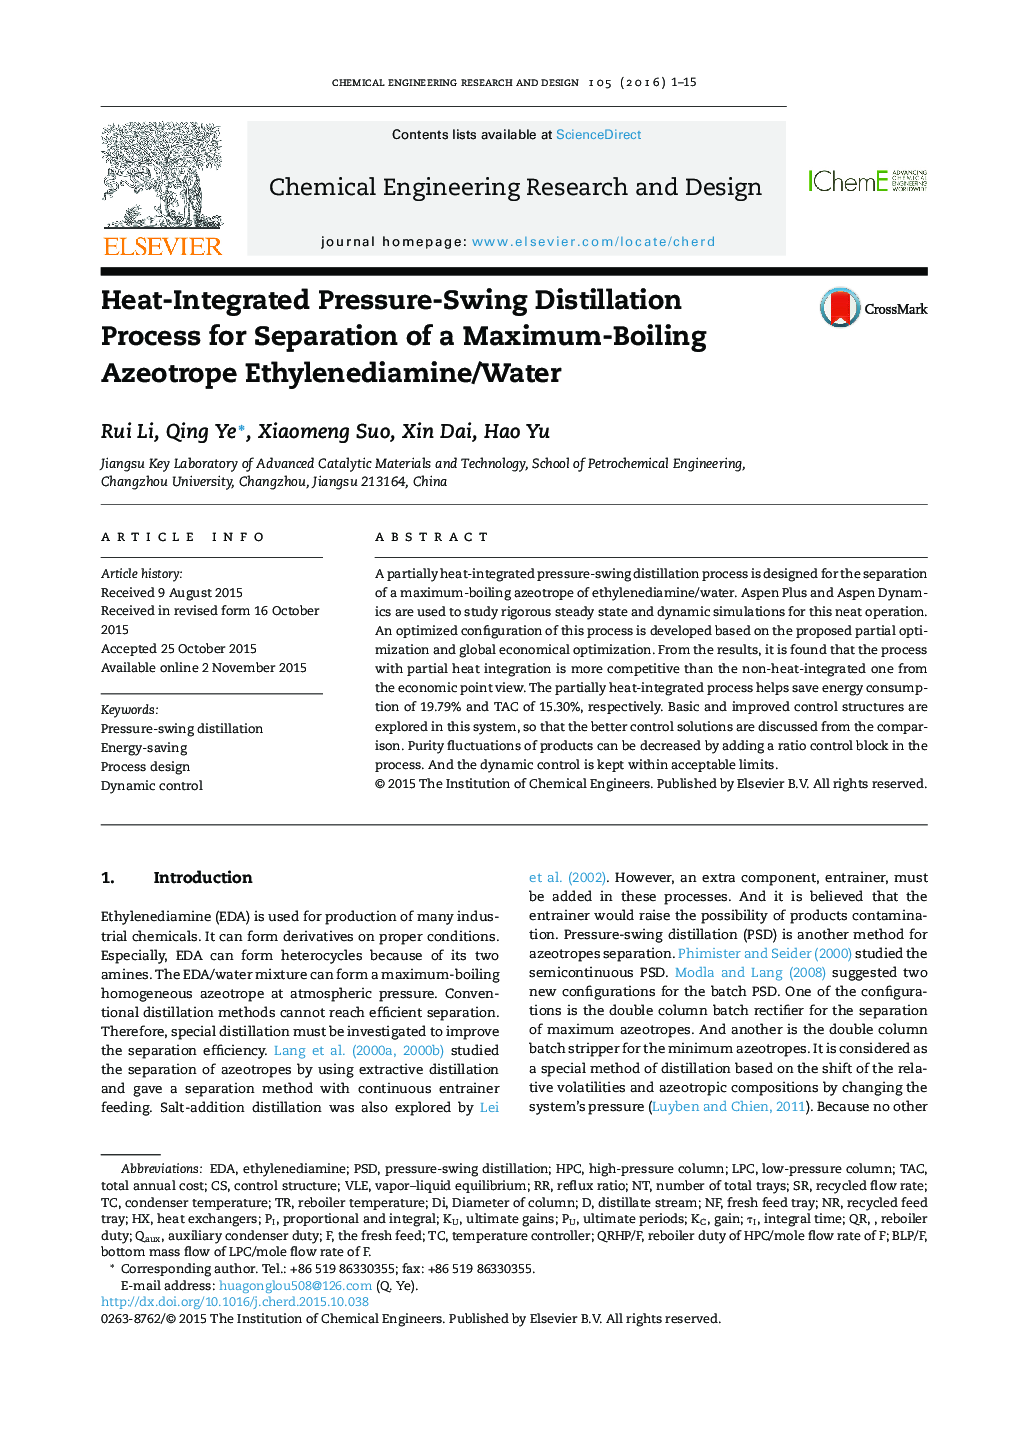 فرایند تقطیر تحت فشار یکپارچه فشار برای جداسازی ایزوتروپ حداکثر اتیلنیدامین / آب 